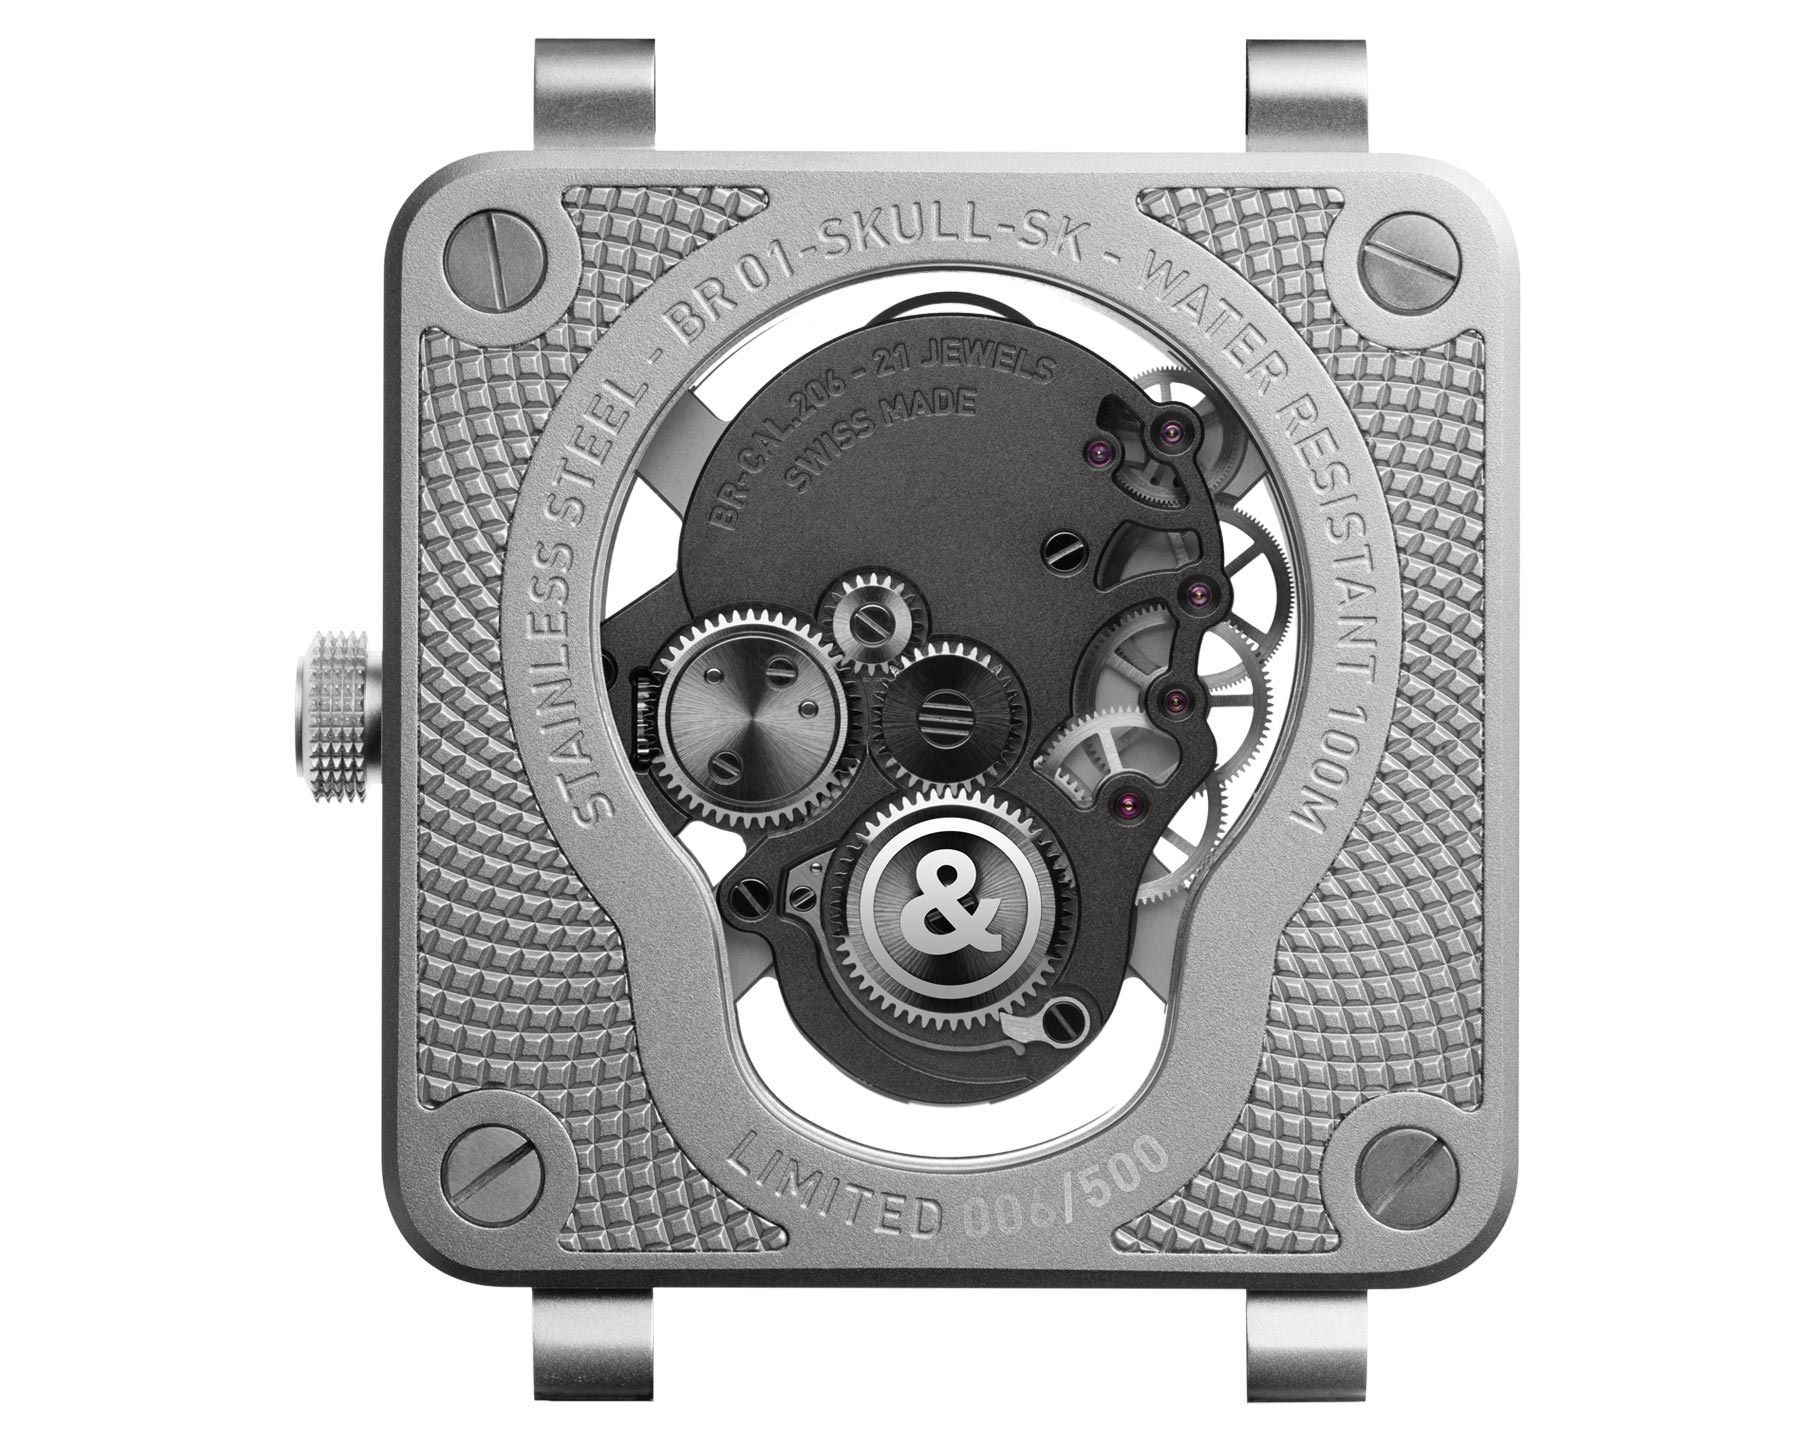 Bell & Ross Concept BR 01 Skull Skeleton Dial 46 mm Manual Winding Watch For Men - 4